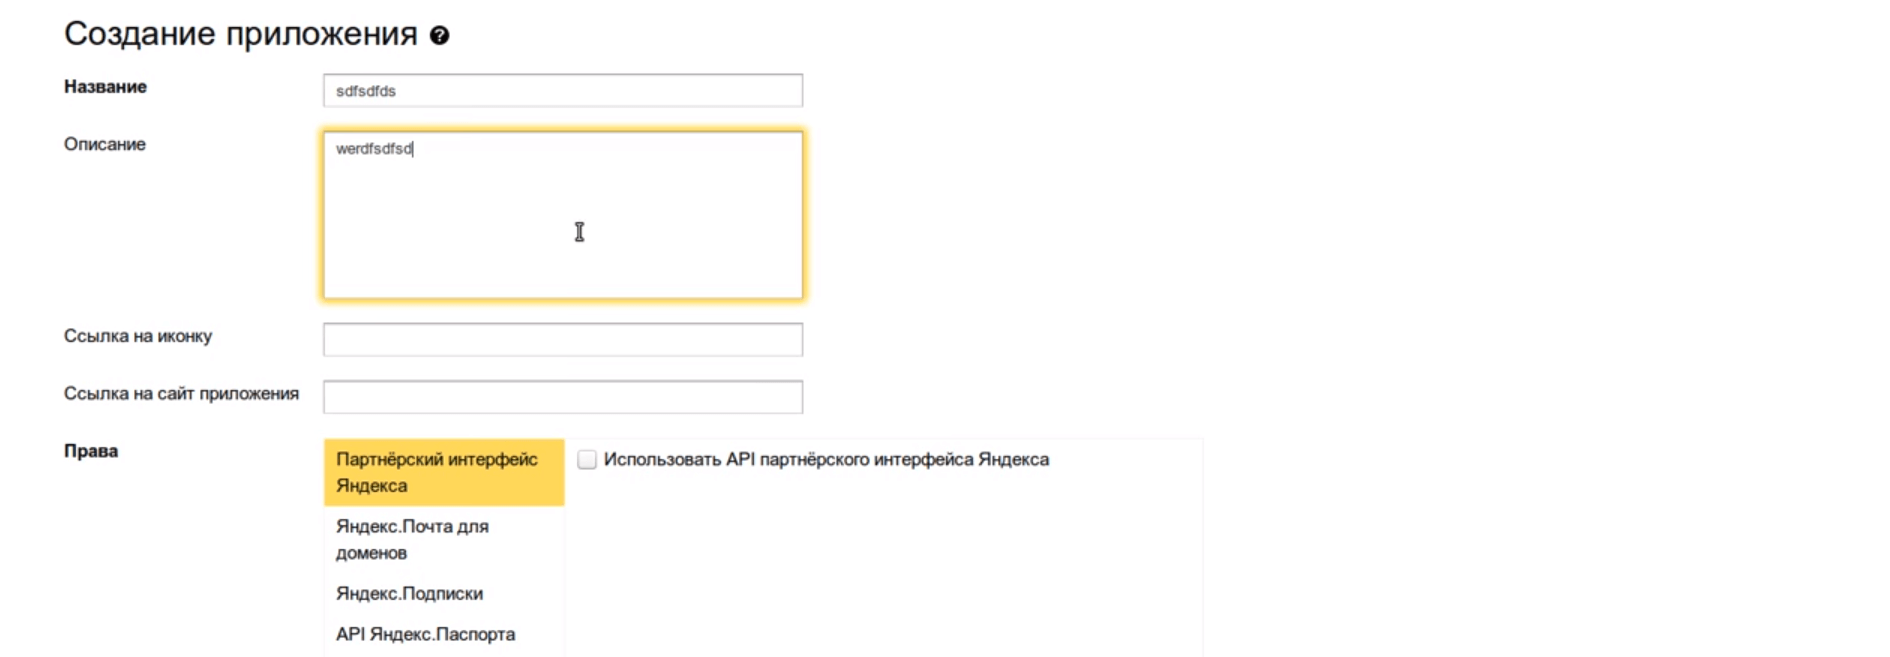 Установка плагина Original texts Yandex WebMaster Создание приложения